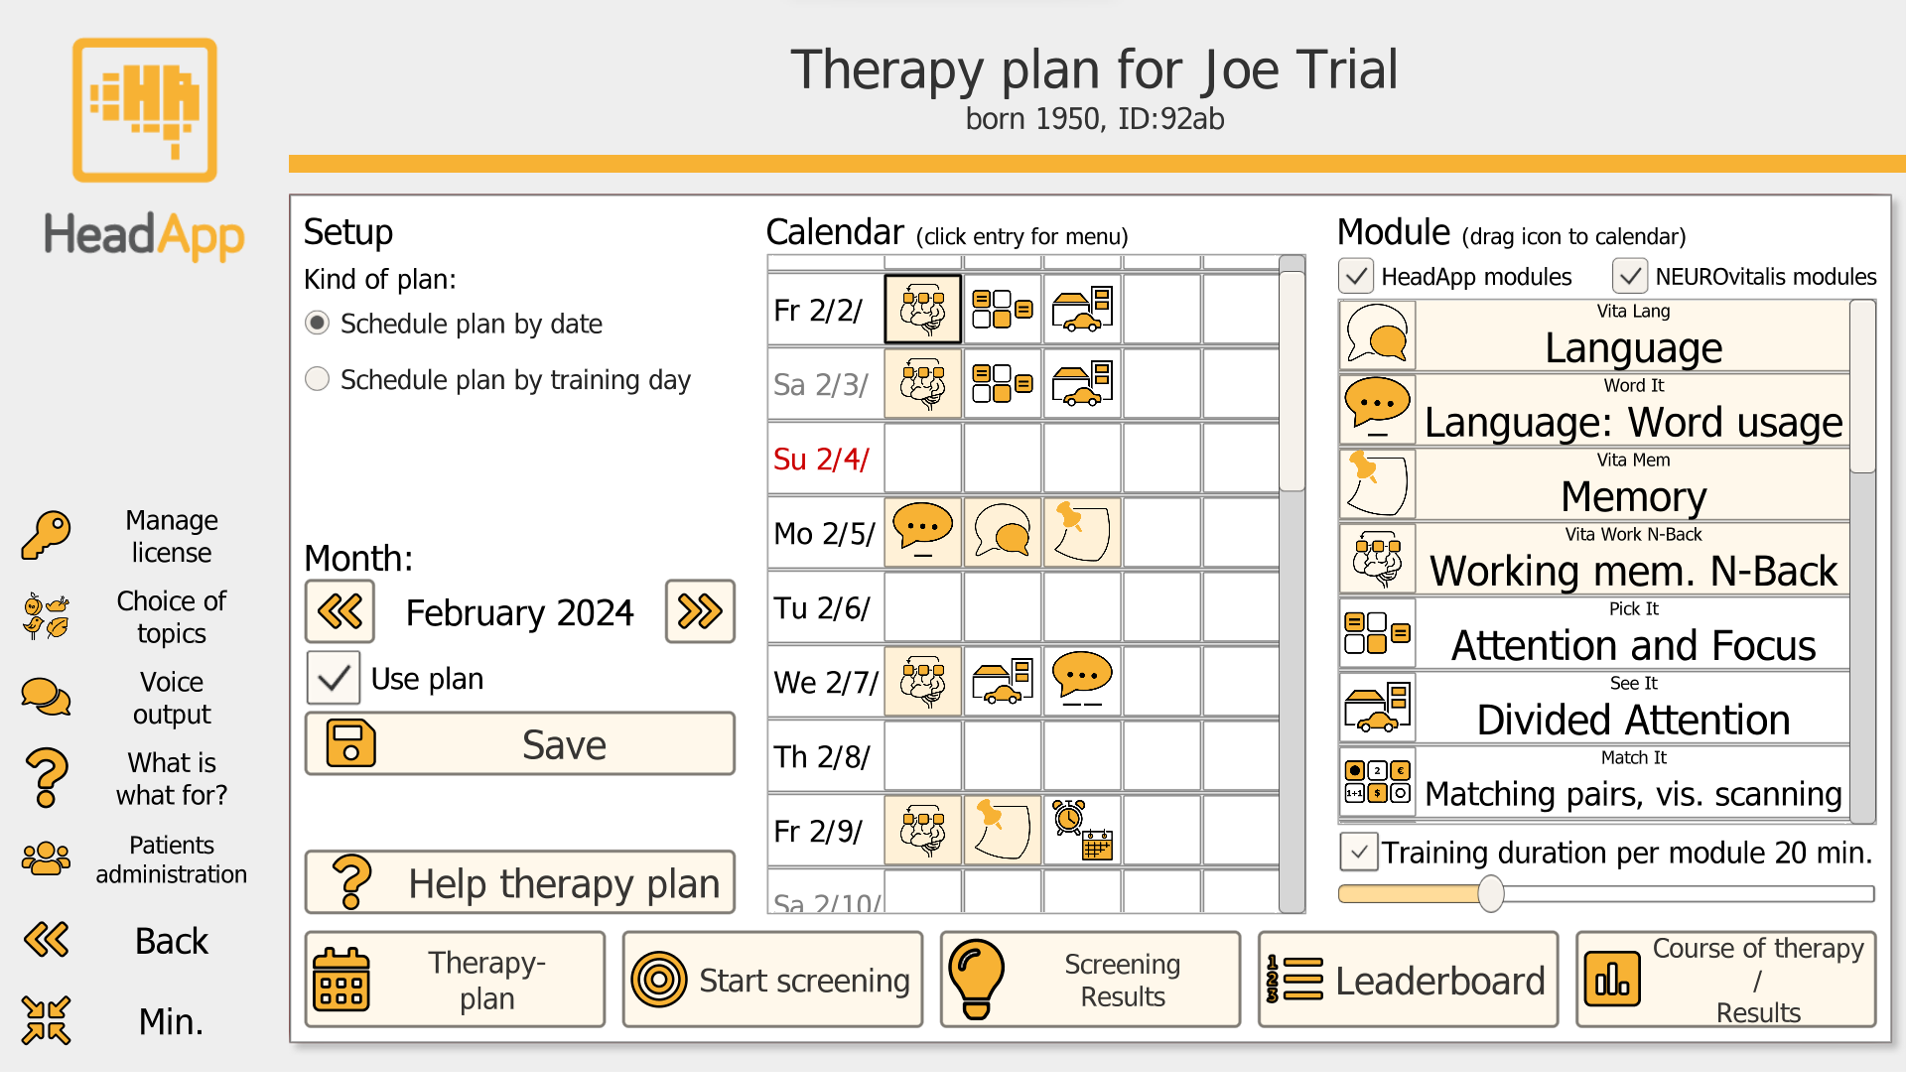 Telerehabilitation - Therapy plan